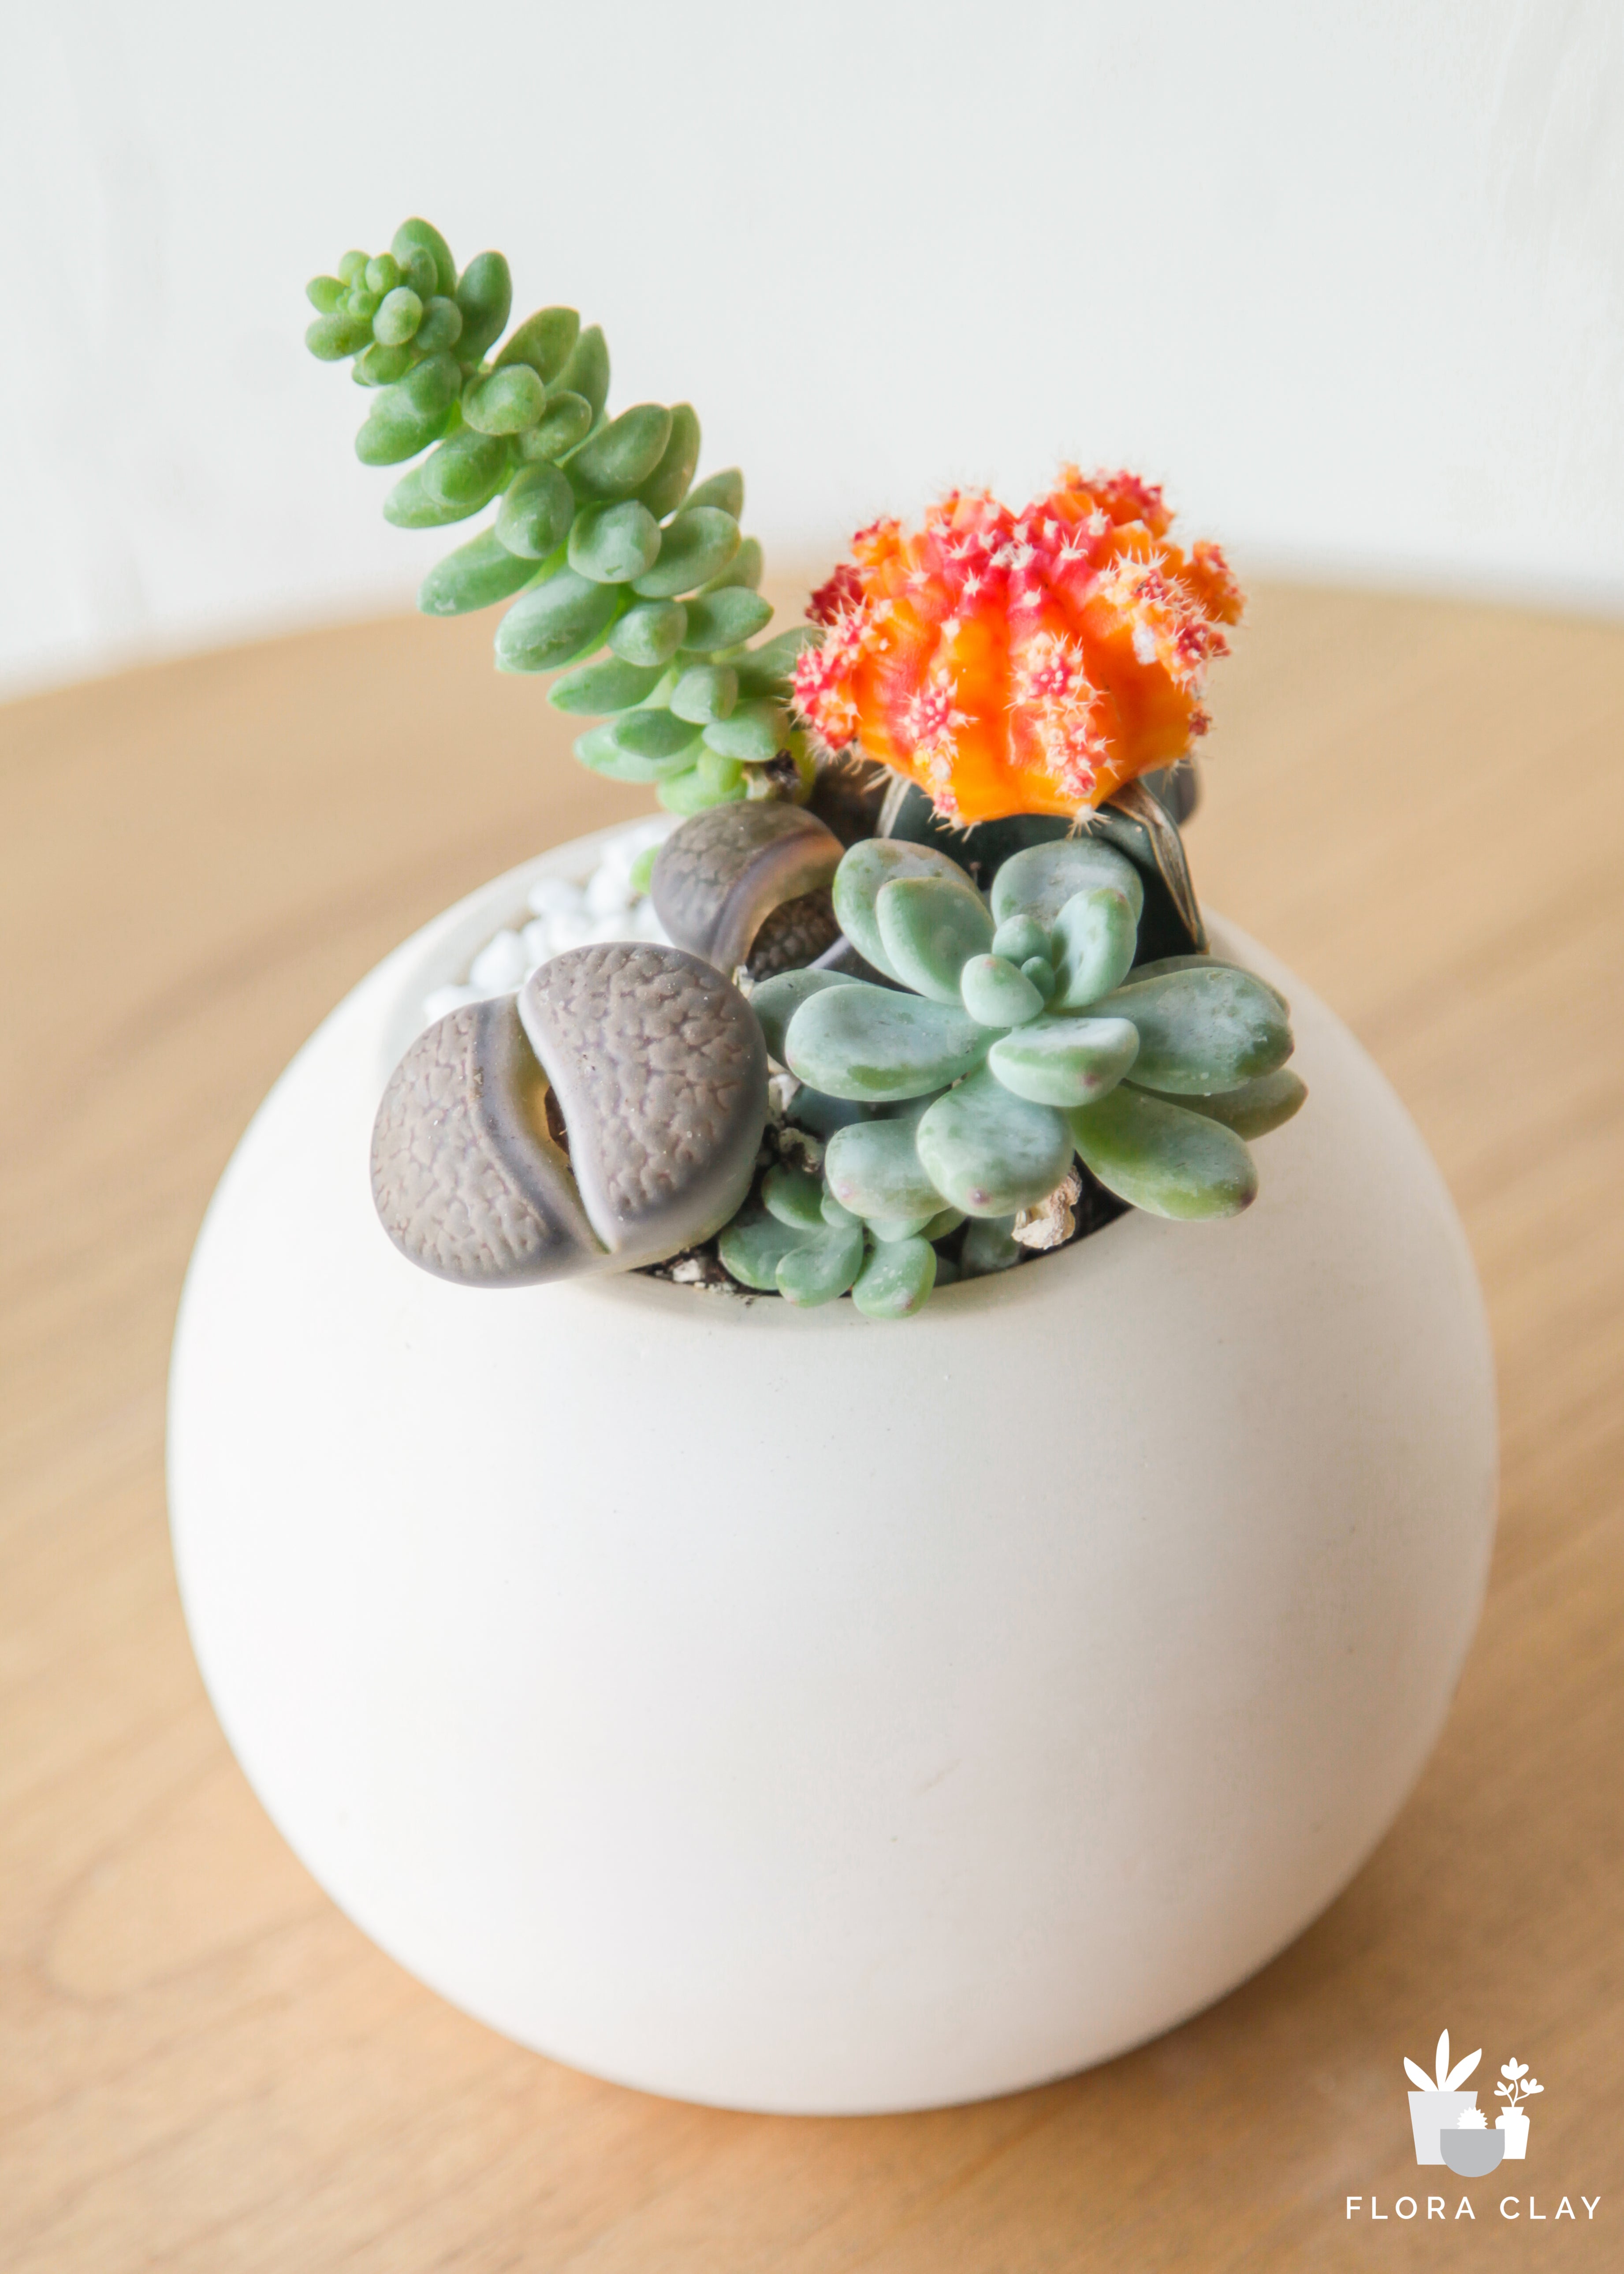 stone-ball-cacti-floraclay-2.jpg